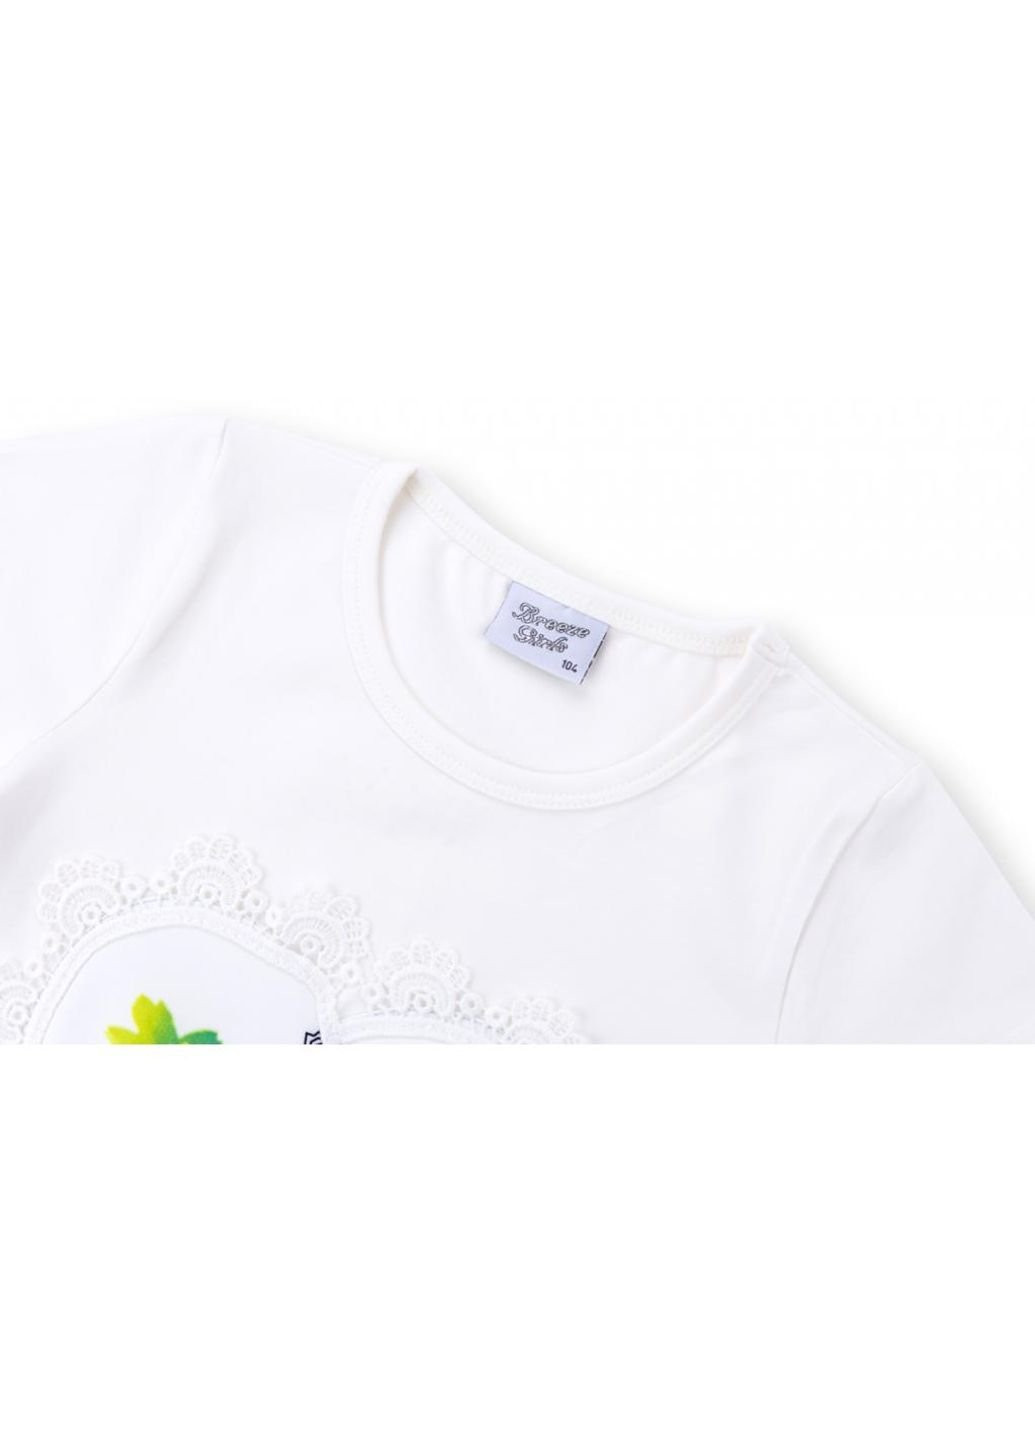 Белая демисезонная футболка детская с башней (8326-128g-white) Breeze